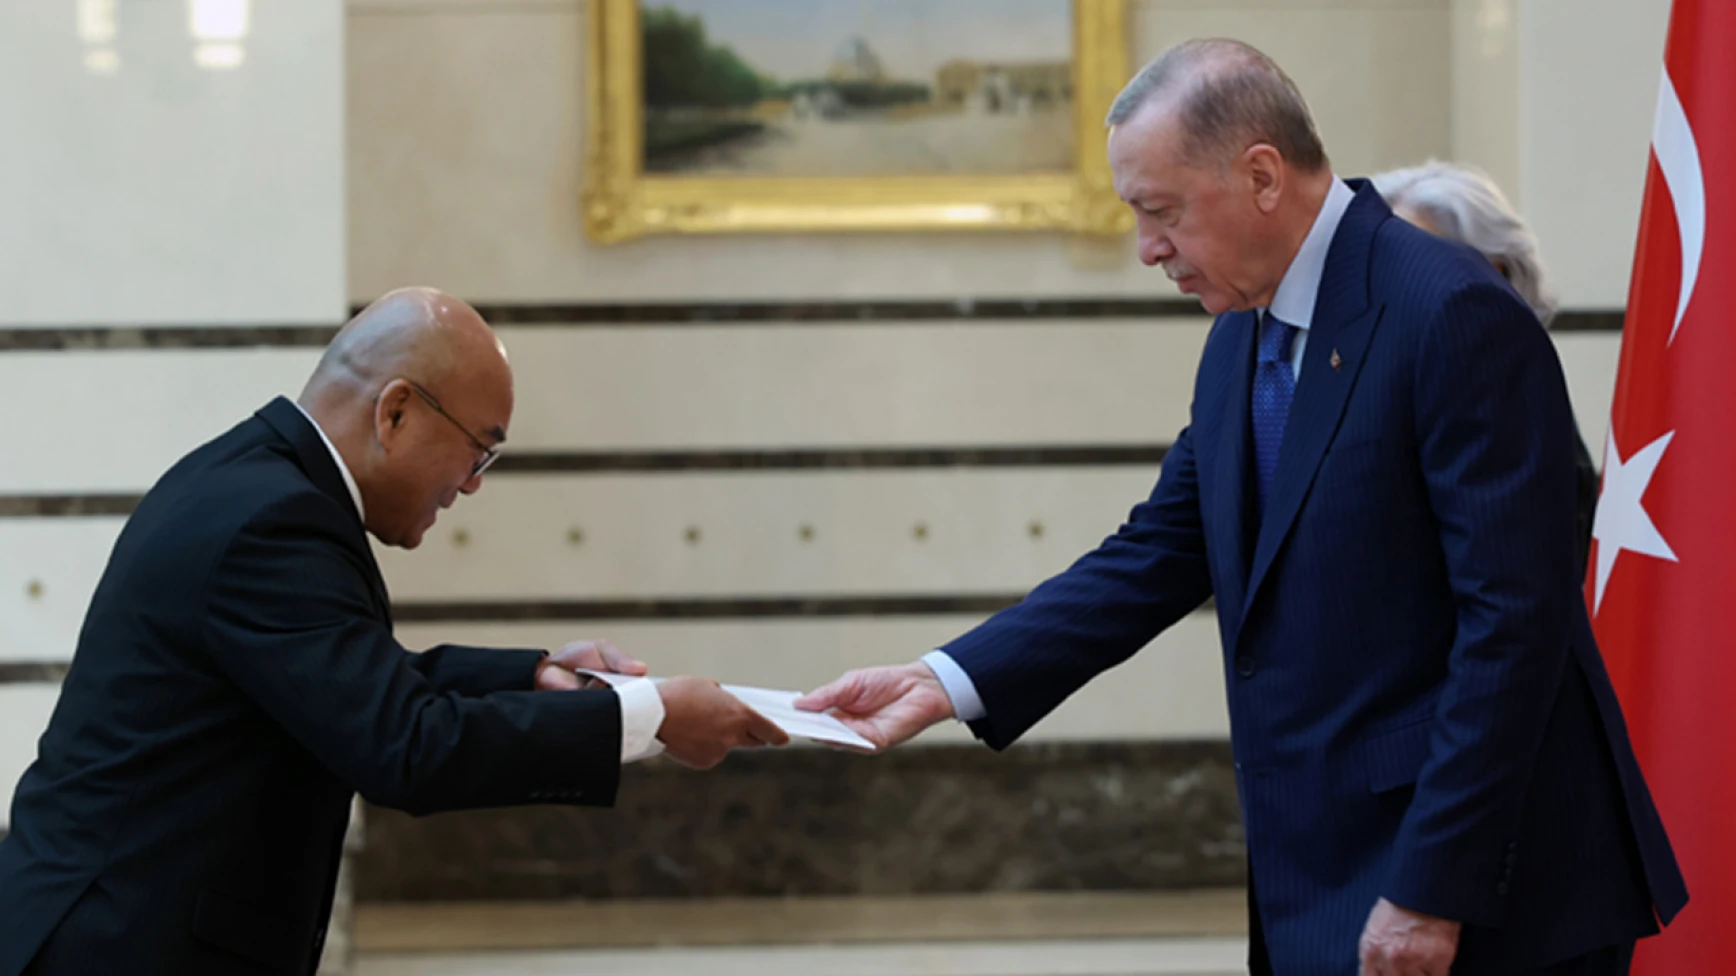 7 ülkenin büyükelçisinden Erdoğan’a güven mektubu